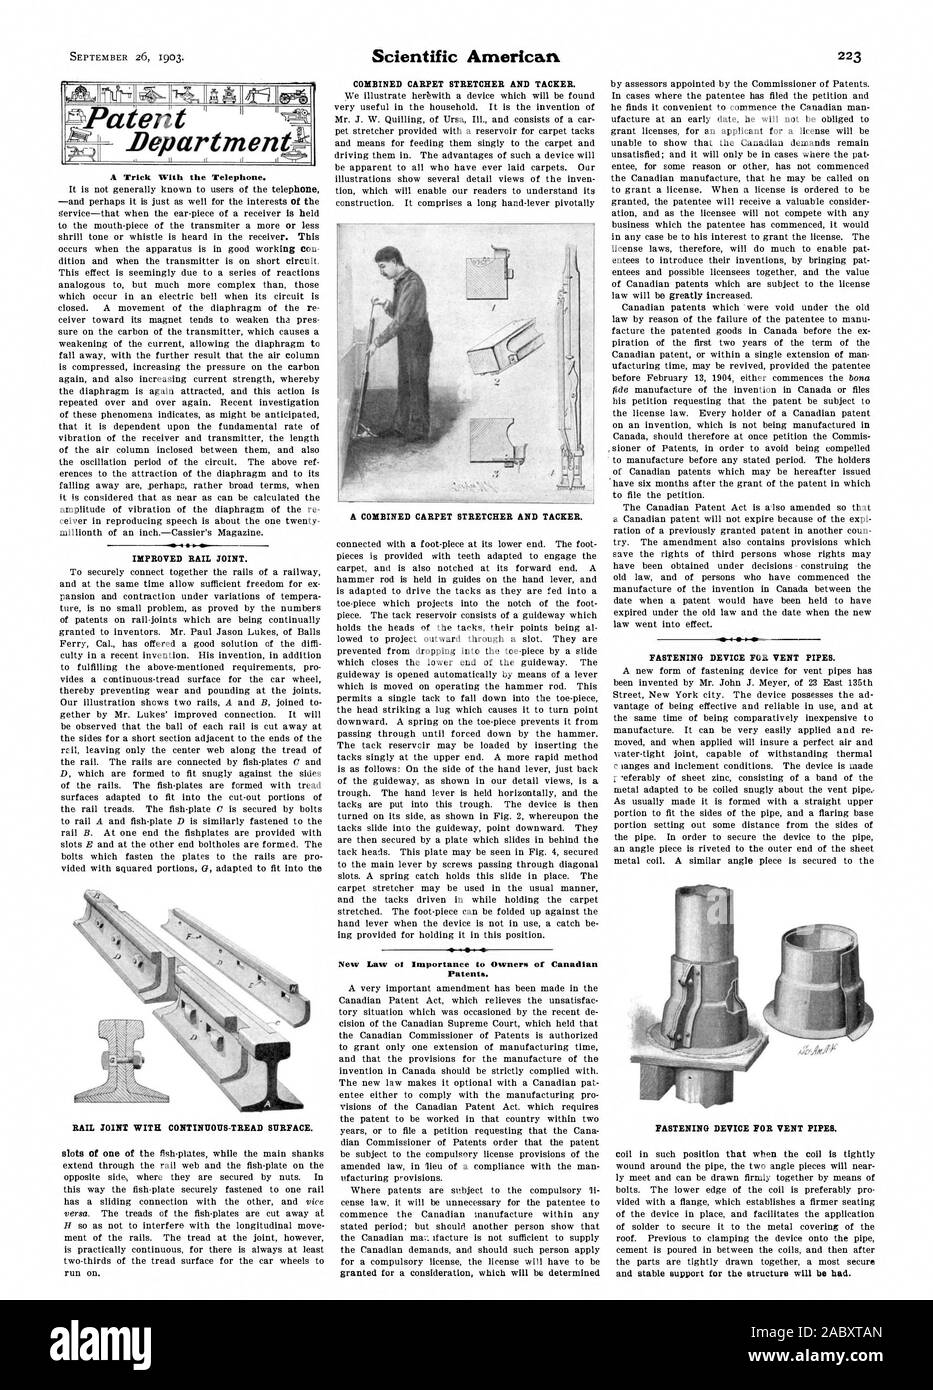 Un truco con el teléfono. Nueva Ley ot importancia a los propietarios de las patentes canadienses. Bepartmentit patentes, Scientific American, 1903-09-26 Foto de stock